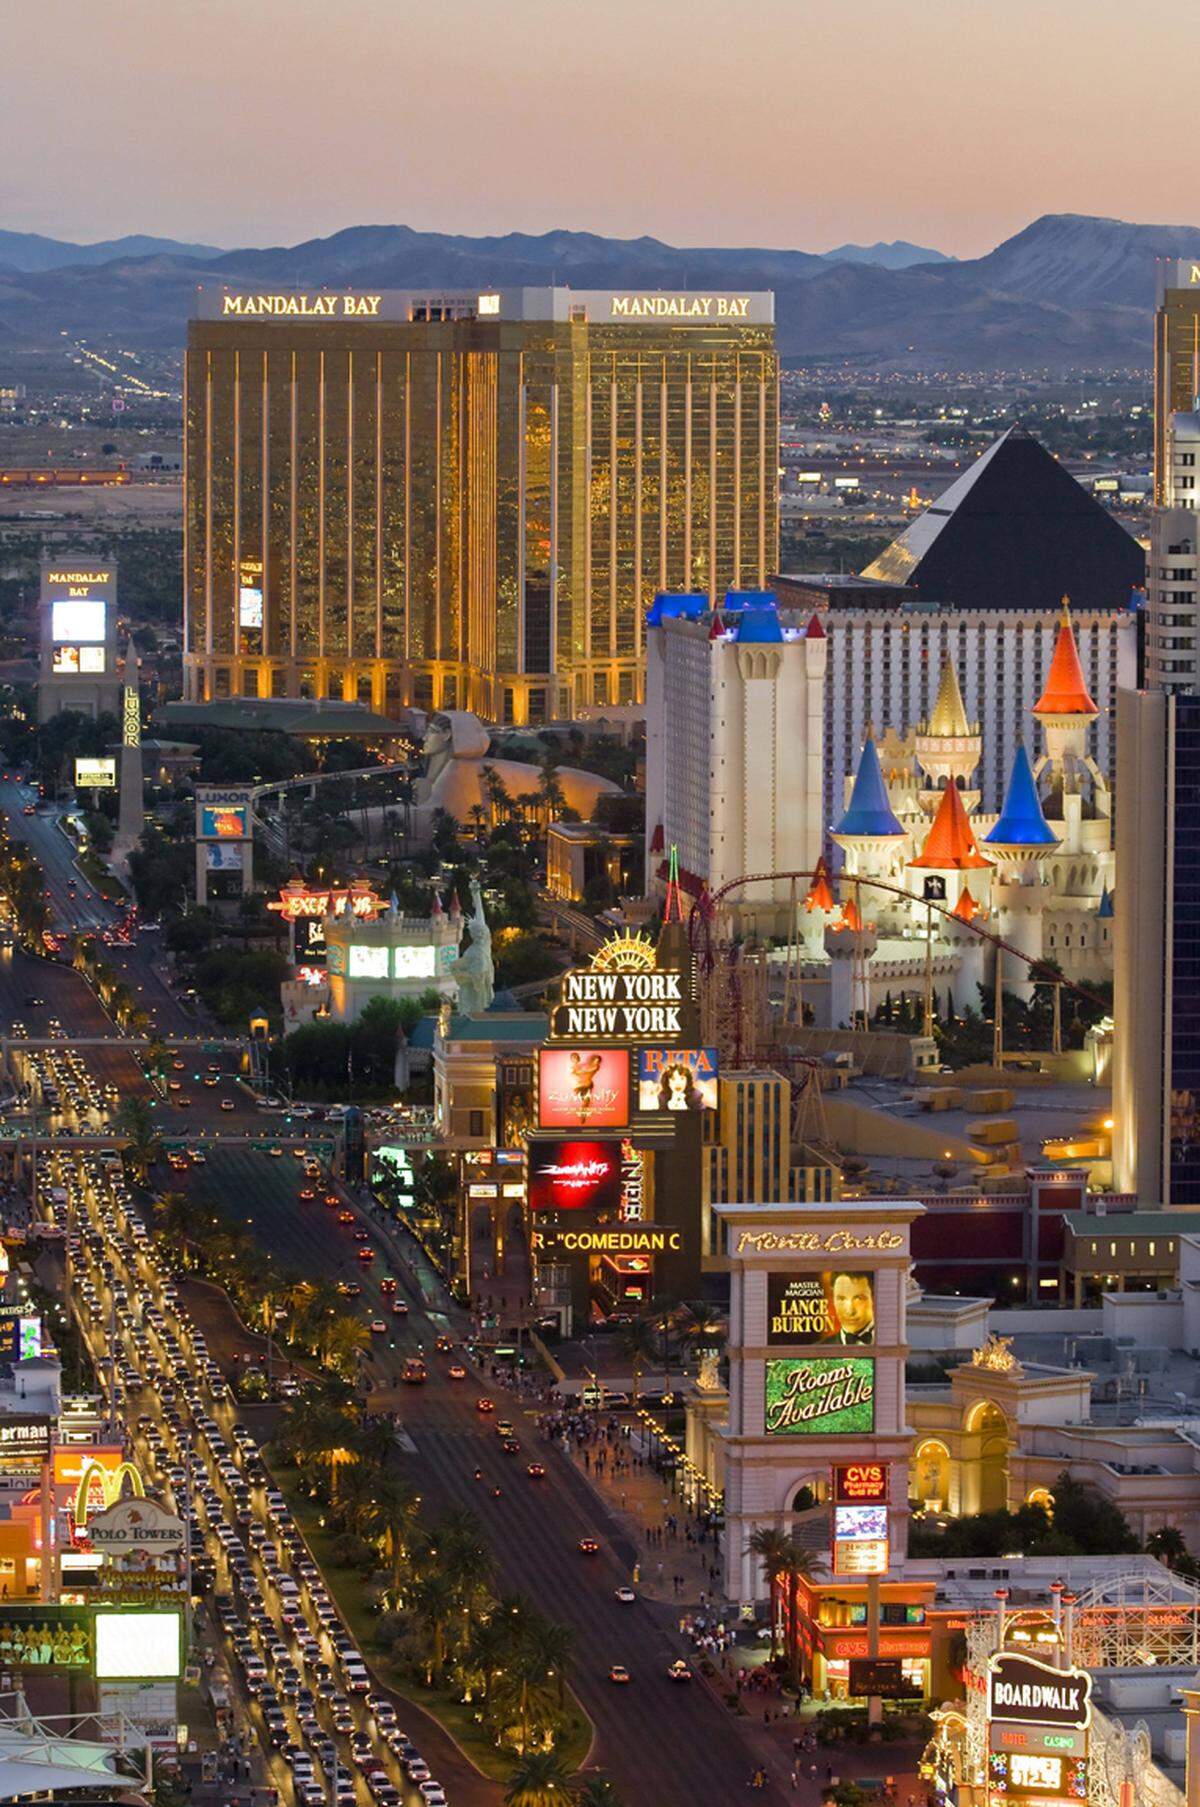 Die lange Straße durch die bunte Glitzerwelt zieht jährlich 30,5 Millionen Touristen an. Die meisten der großen und berühmten Hotels befinden sich an dem Las Vegas Strip, der vor allem bei Nacht eine eindrucksvolle Kulisse abgibt.